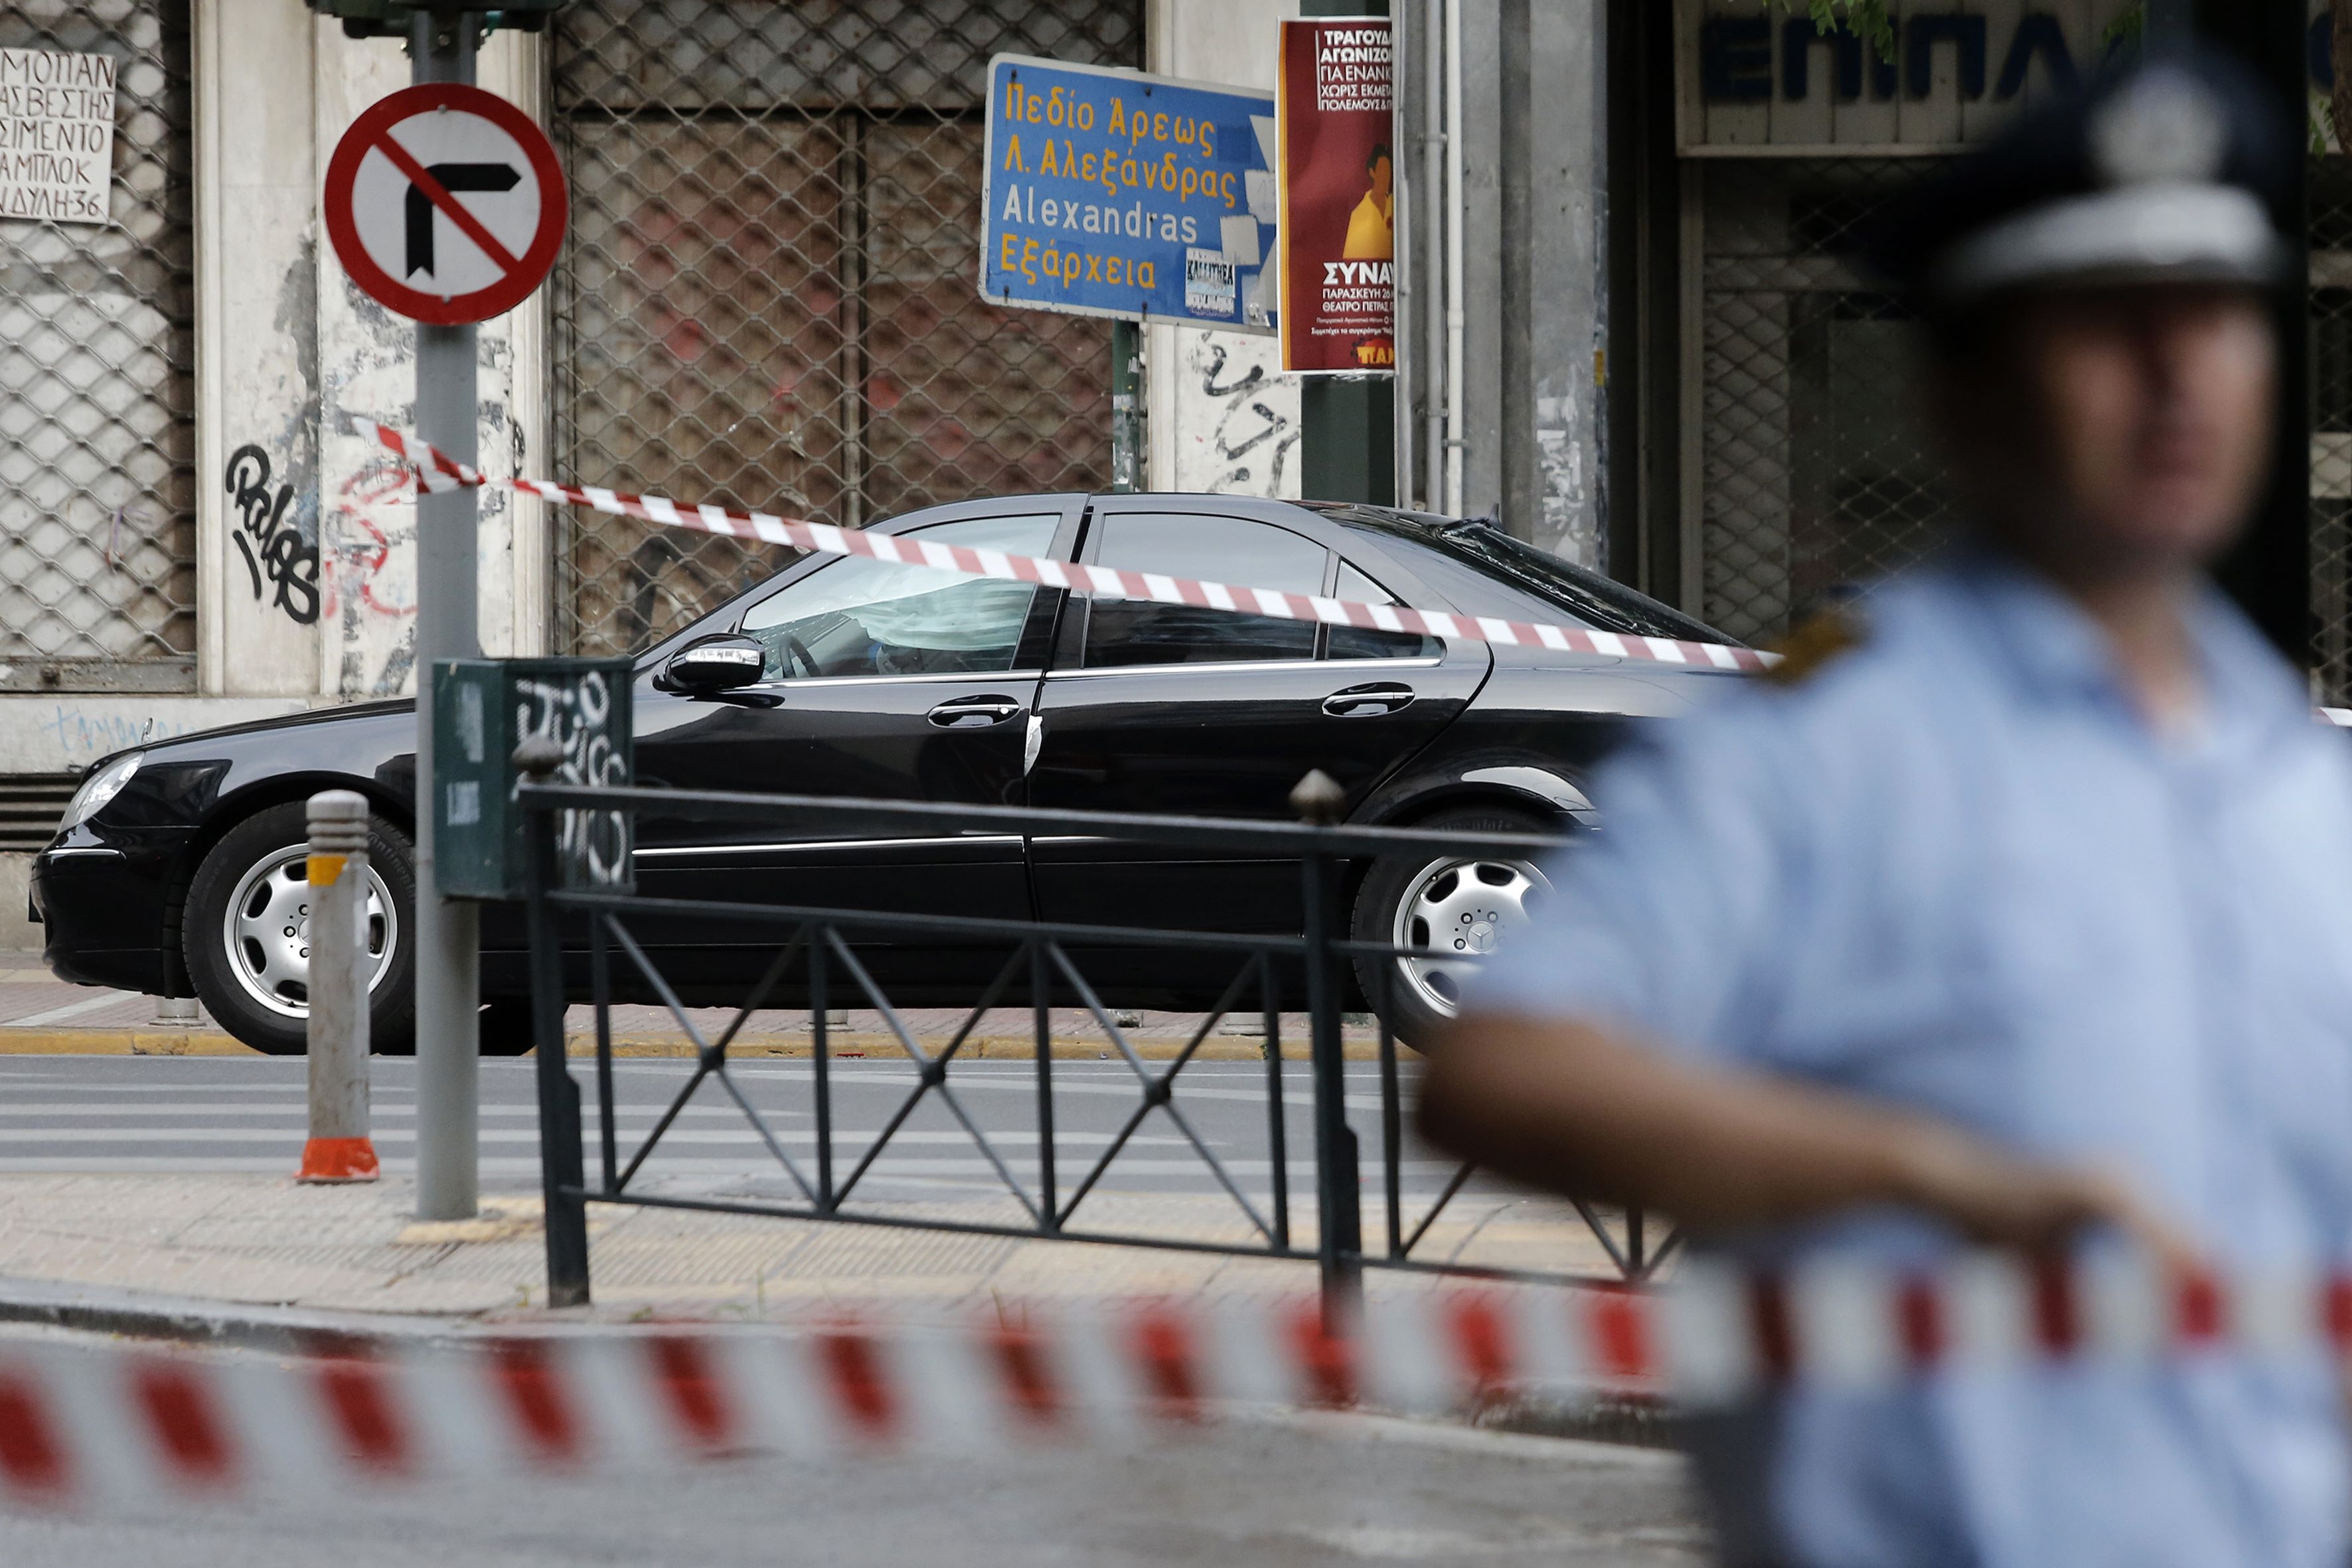 كردون أمنى حول موقع تفجير سيارة رئيس الوزراء اليونانى